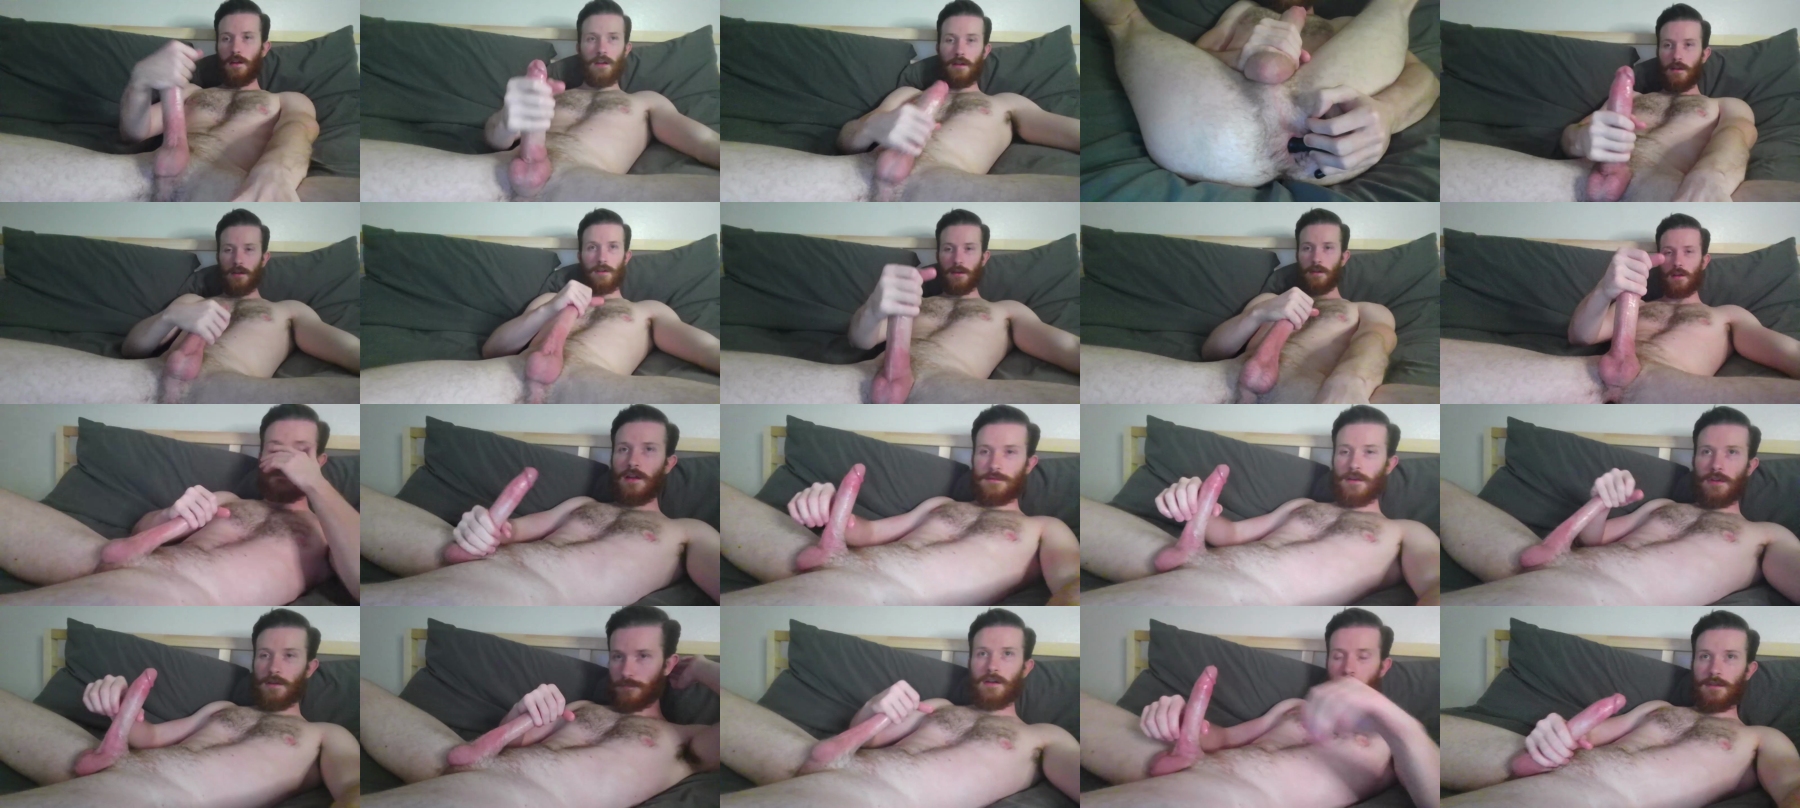 Jason_Pourne  16-07-2021 Male Webcam